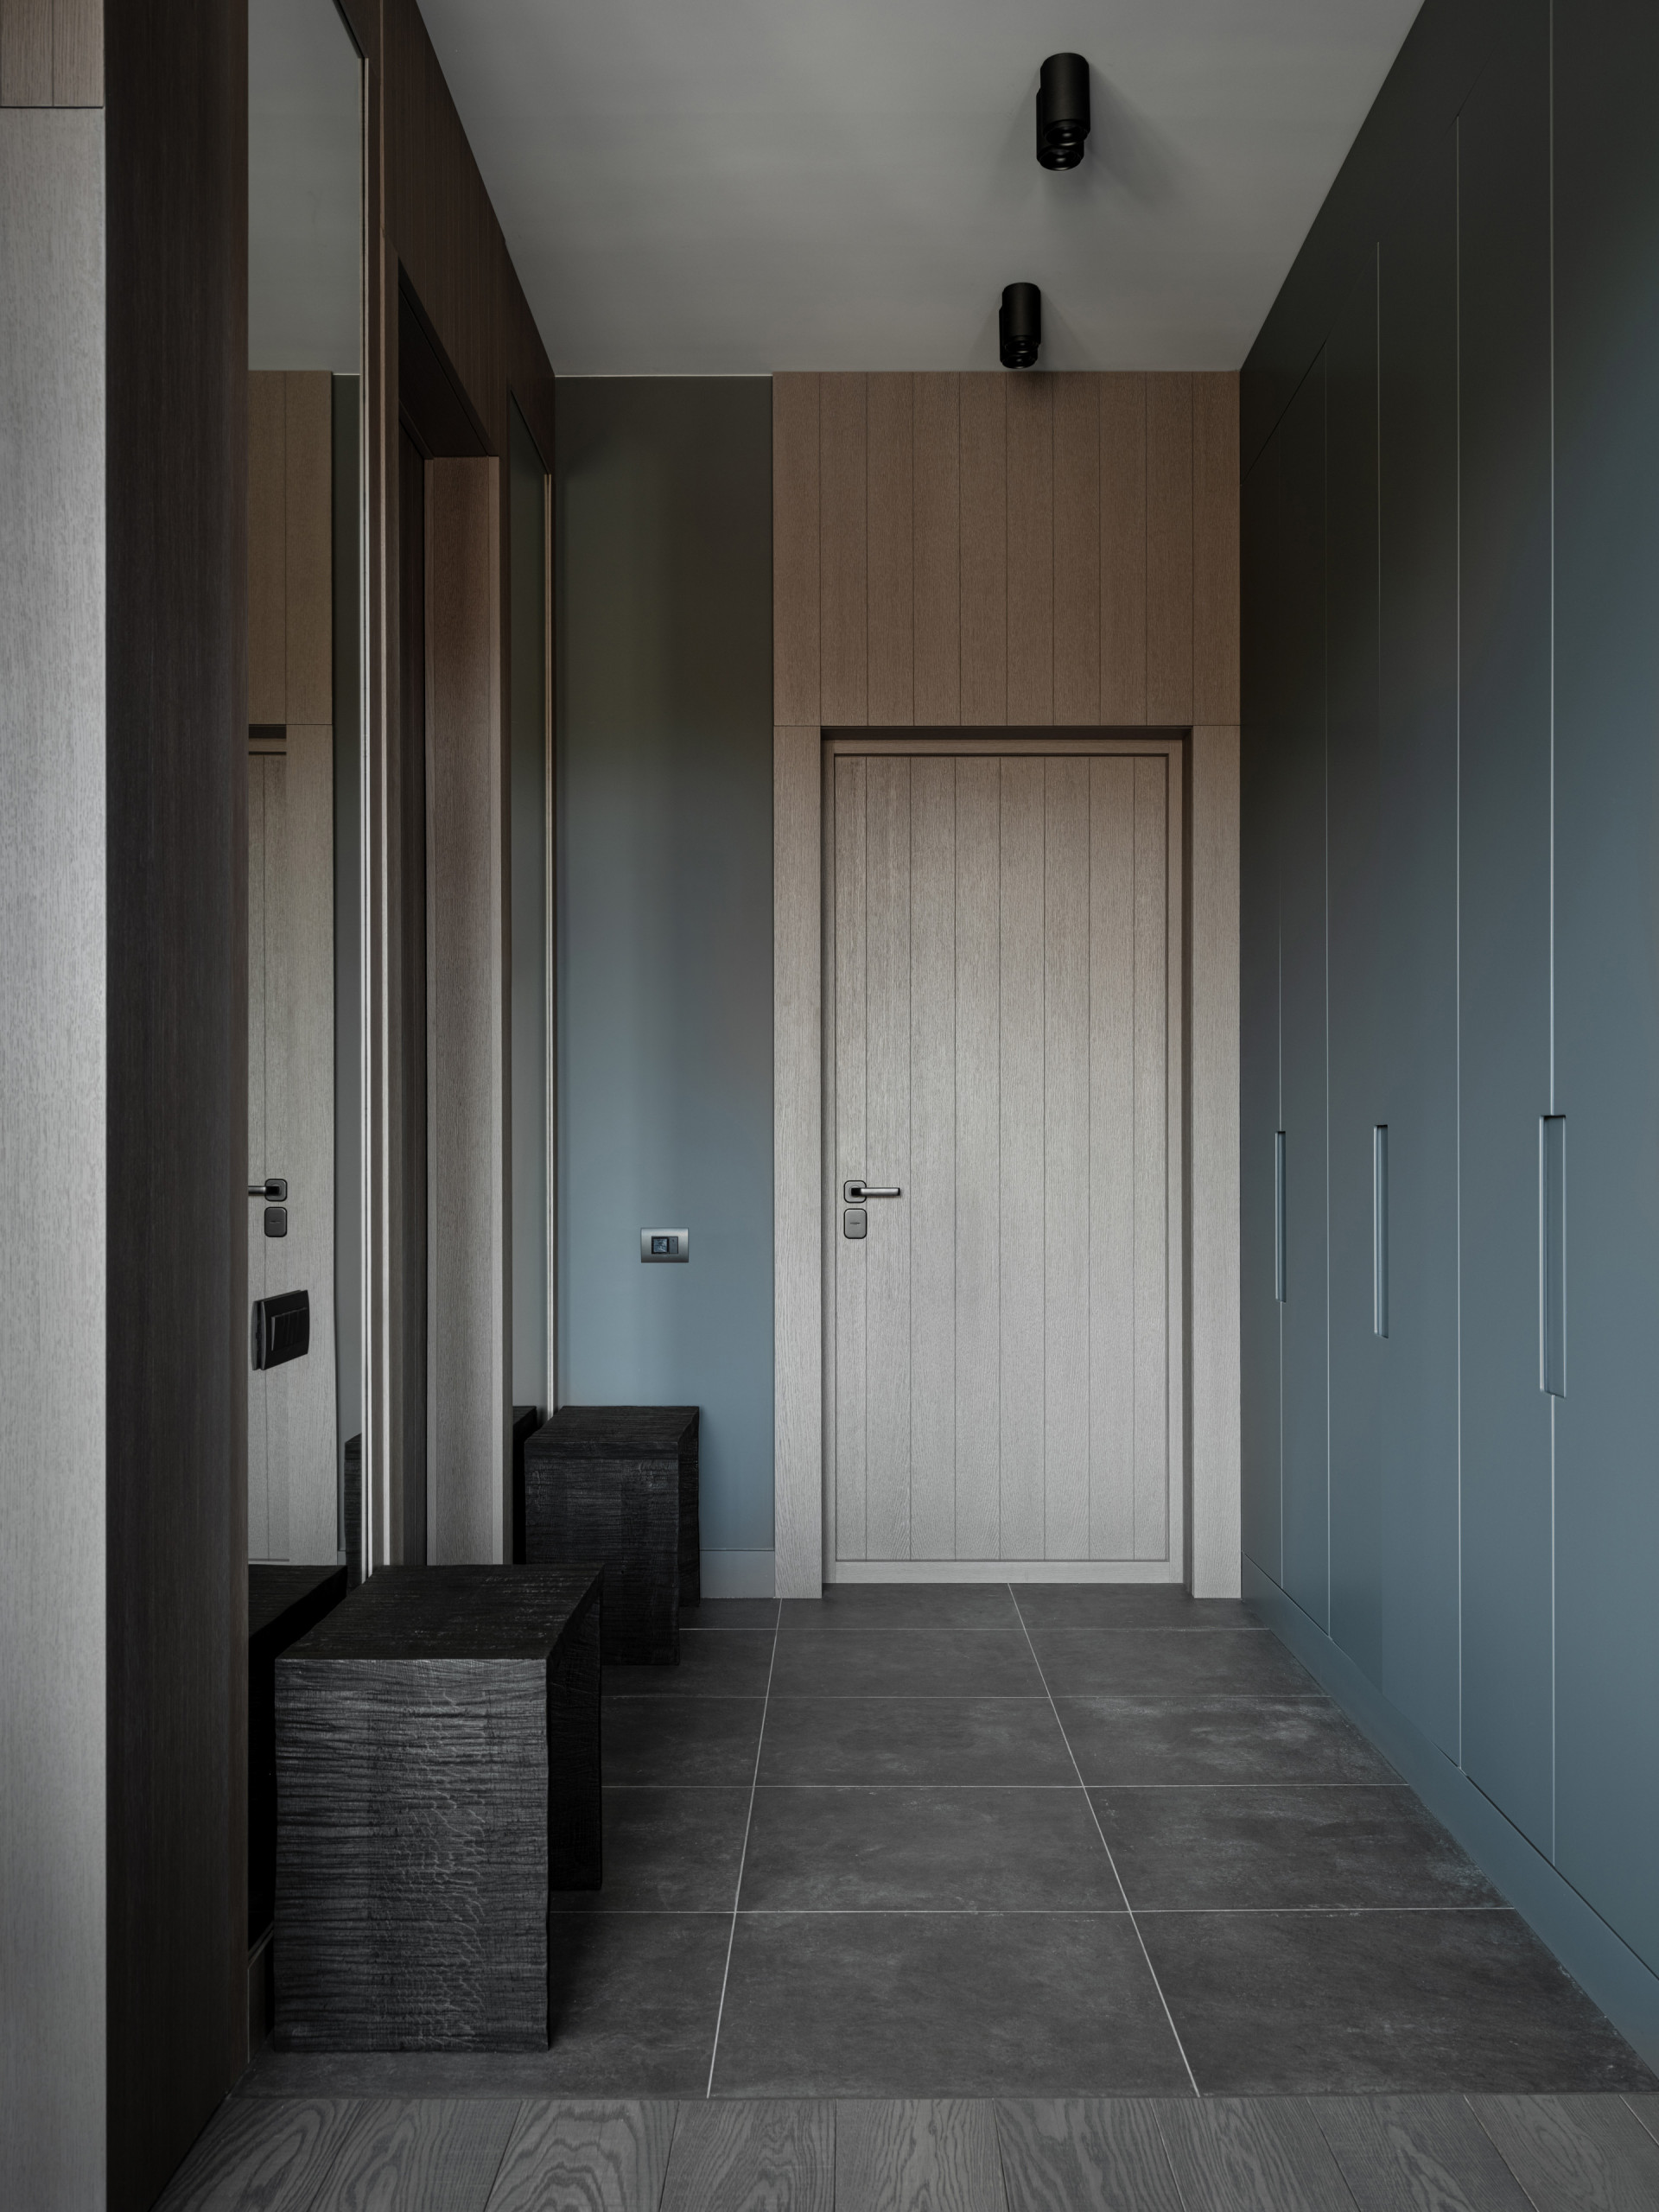 Плитка в коридор — идеи дизайна и обзор самых практичных решений (110 фото)